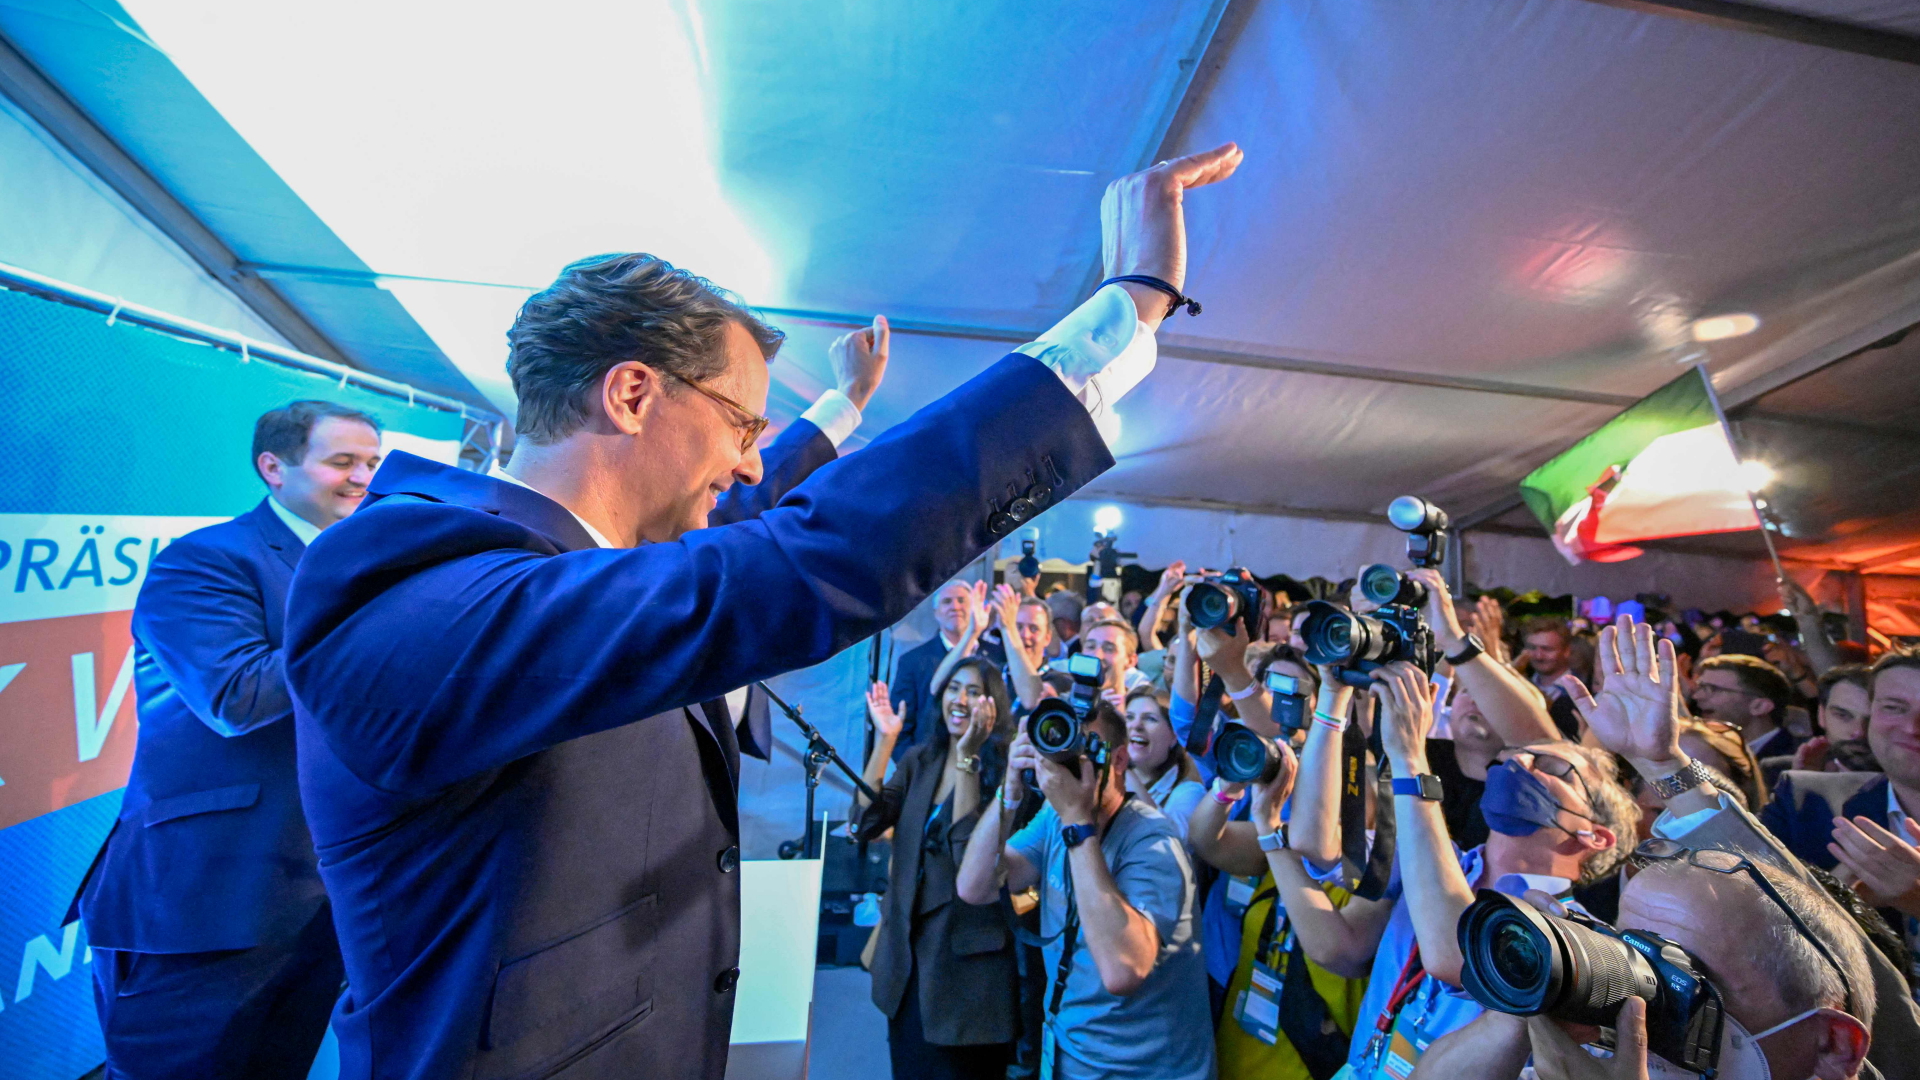 CDU-Ministerpräsident Hendrik Wüst hebt anhand des Wahlsieges seiner Partei in NRW vor einer Menge aus Fotografen und Parteimitgliedern jubelnd die Arme in die Höhe.